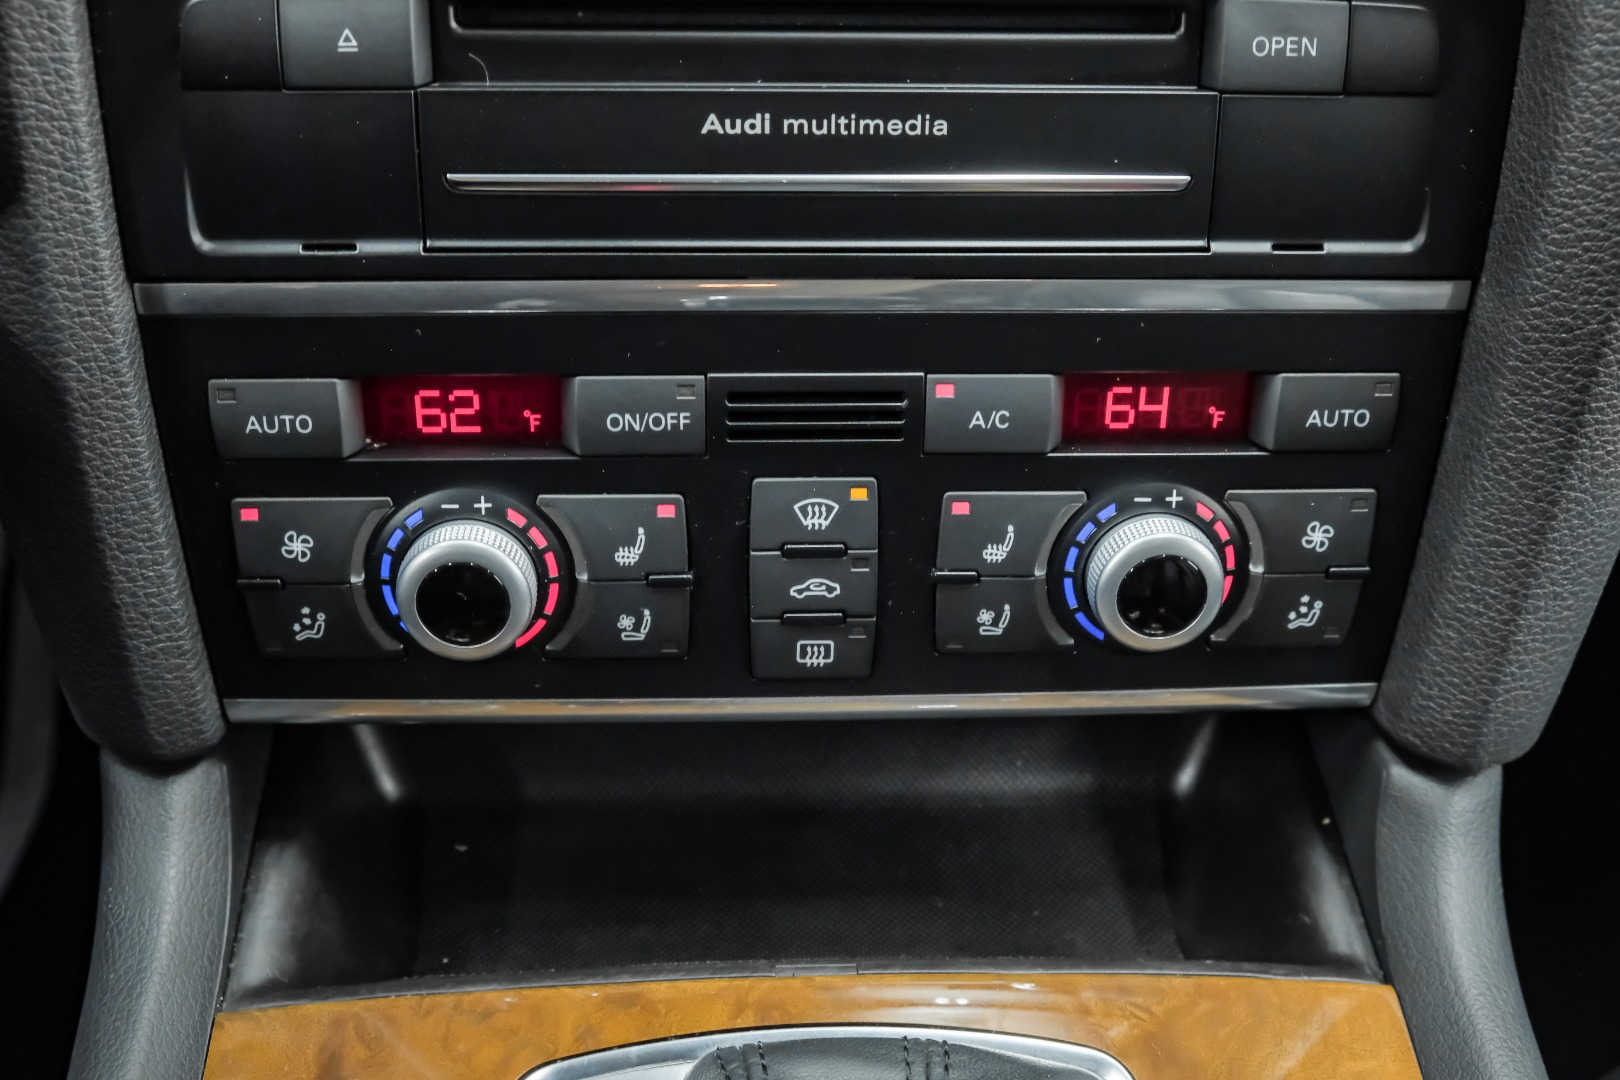 2014 Audi Q7 quattro 4dr 3.0L TDI Prestige 42